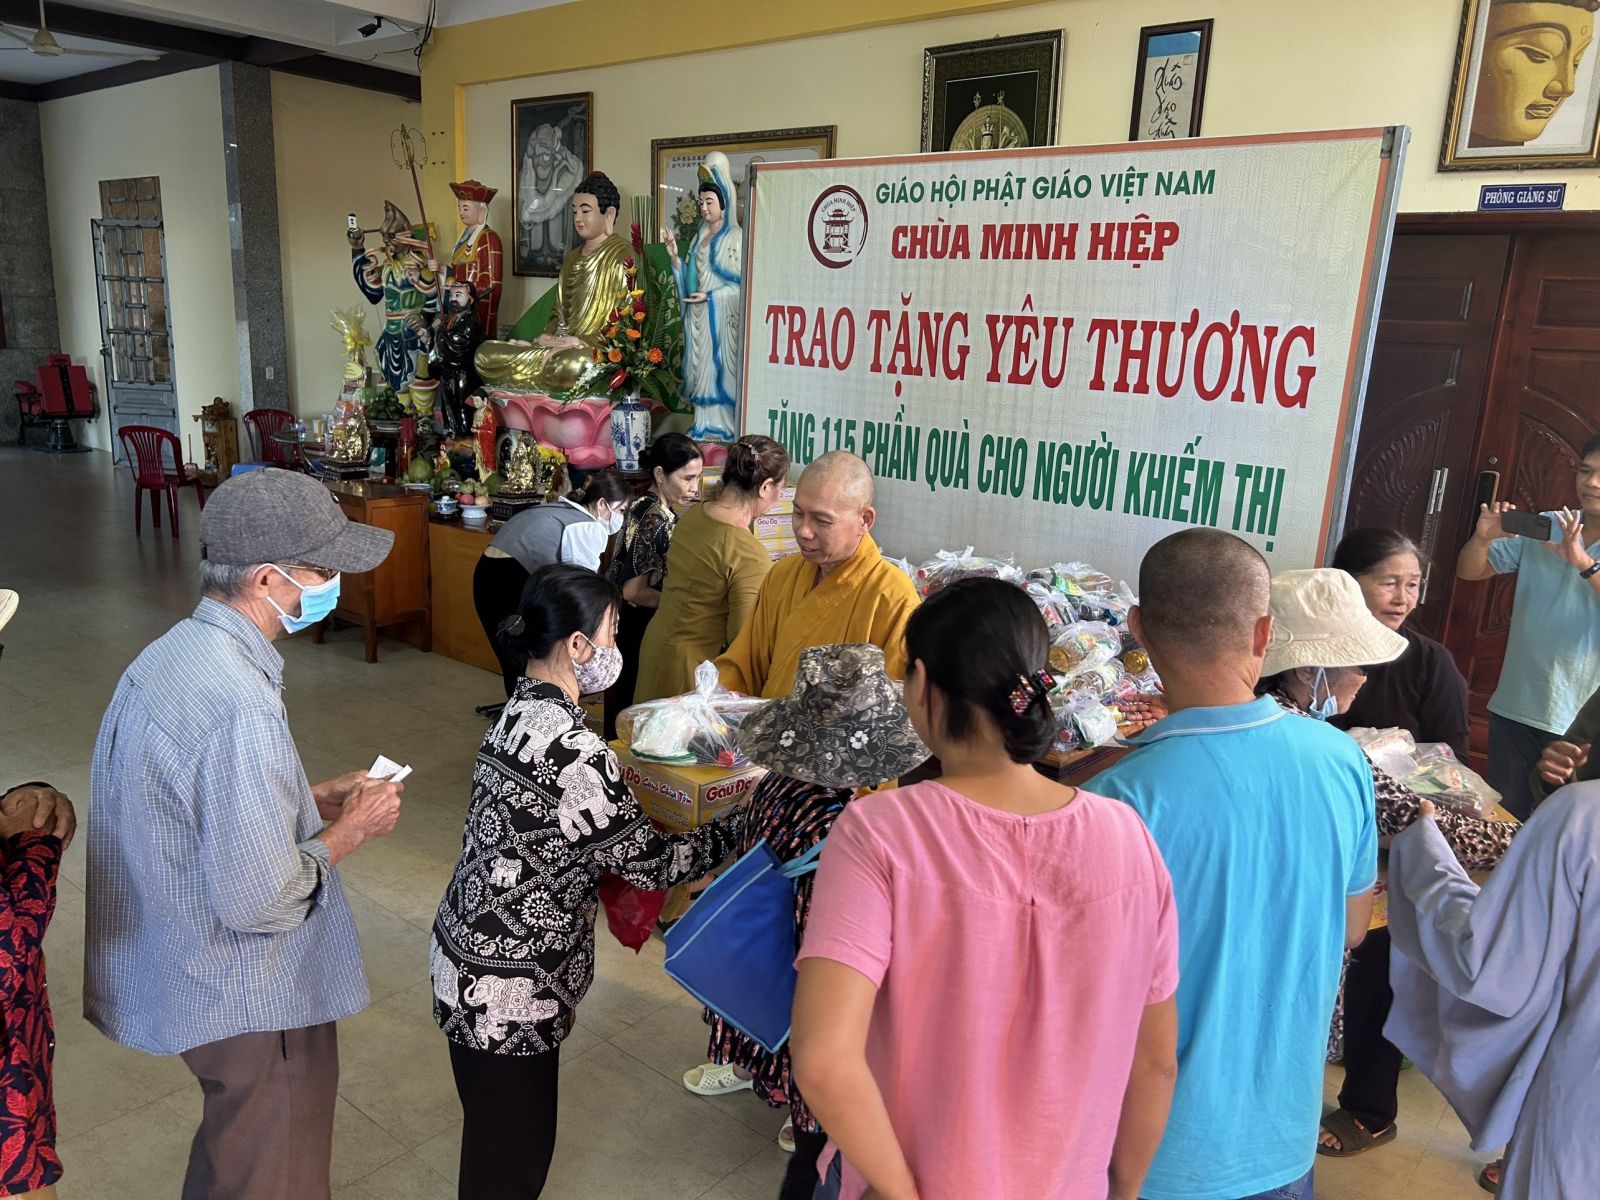 Đồng Nai: Khóa tu niệm Phật và tặng quà cho người khiếm thị tại chùa Minh Hiệp